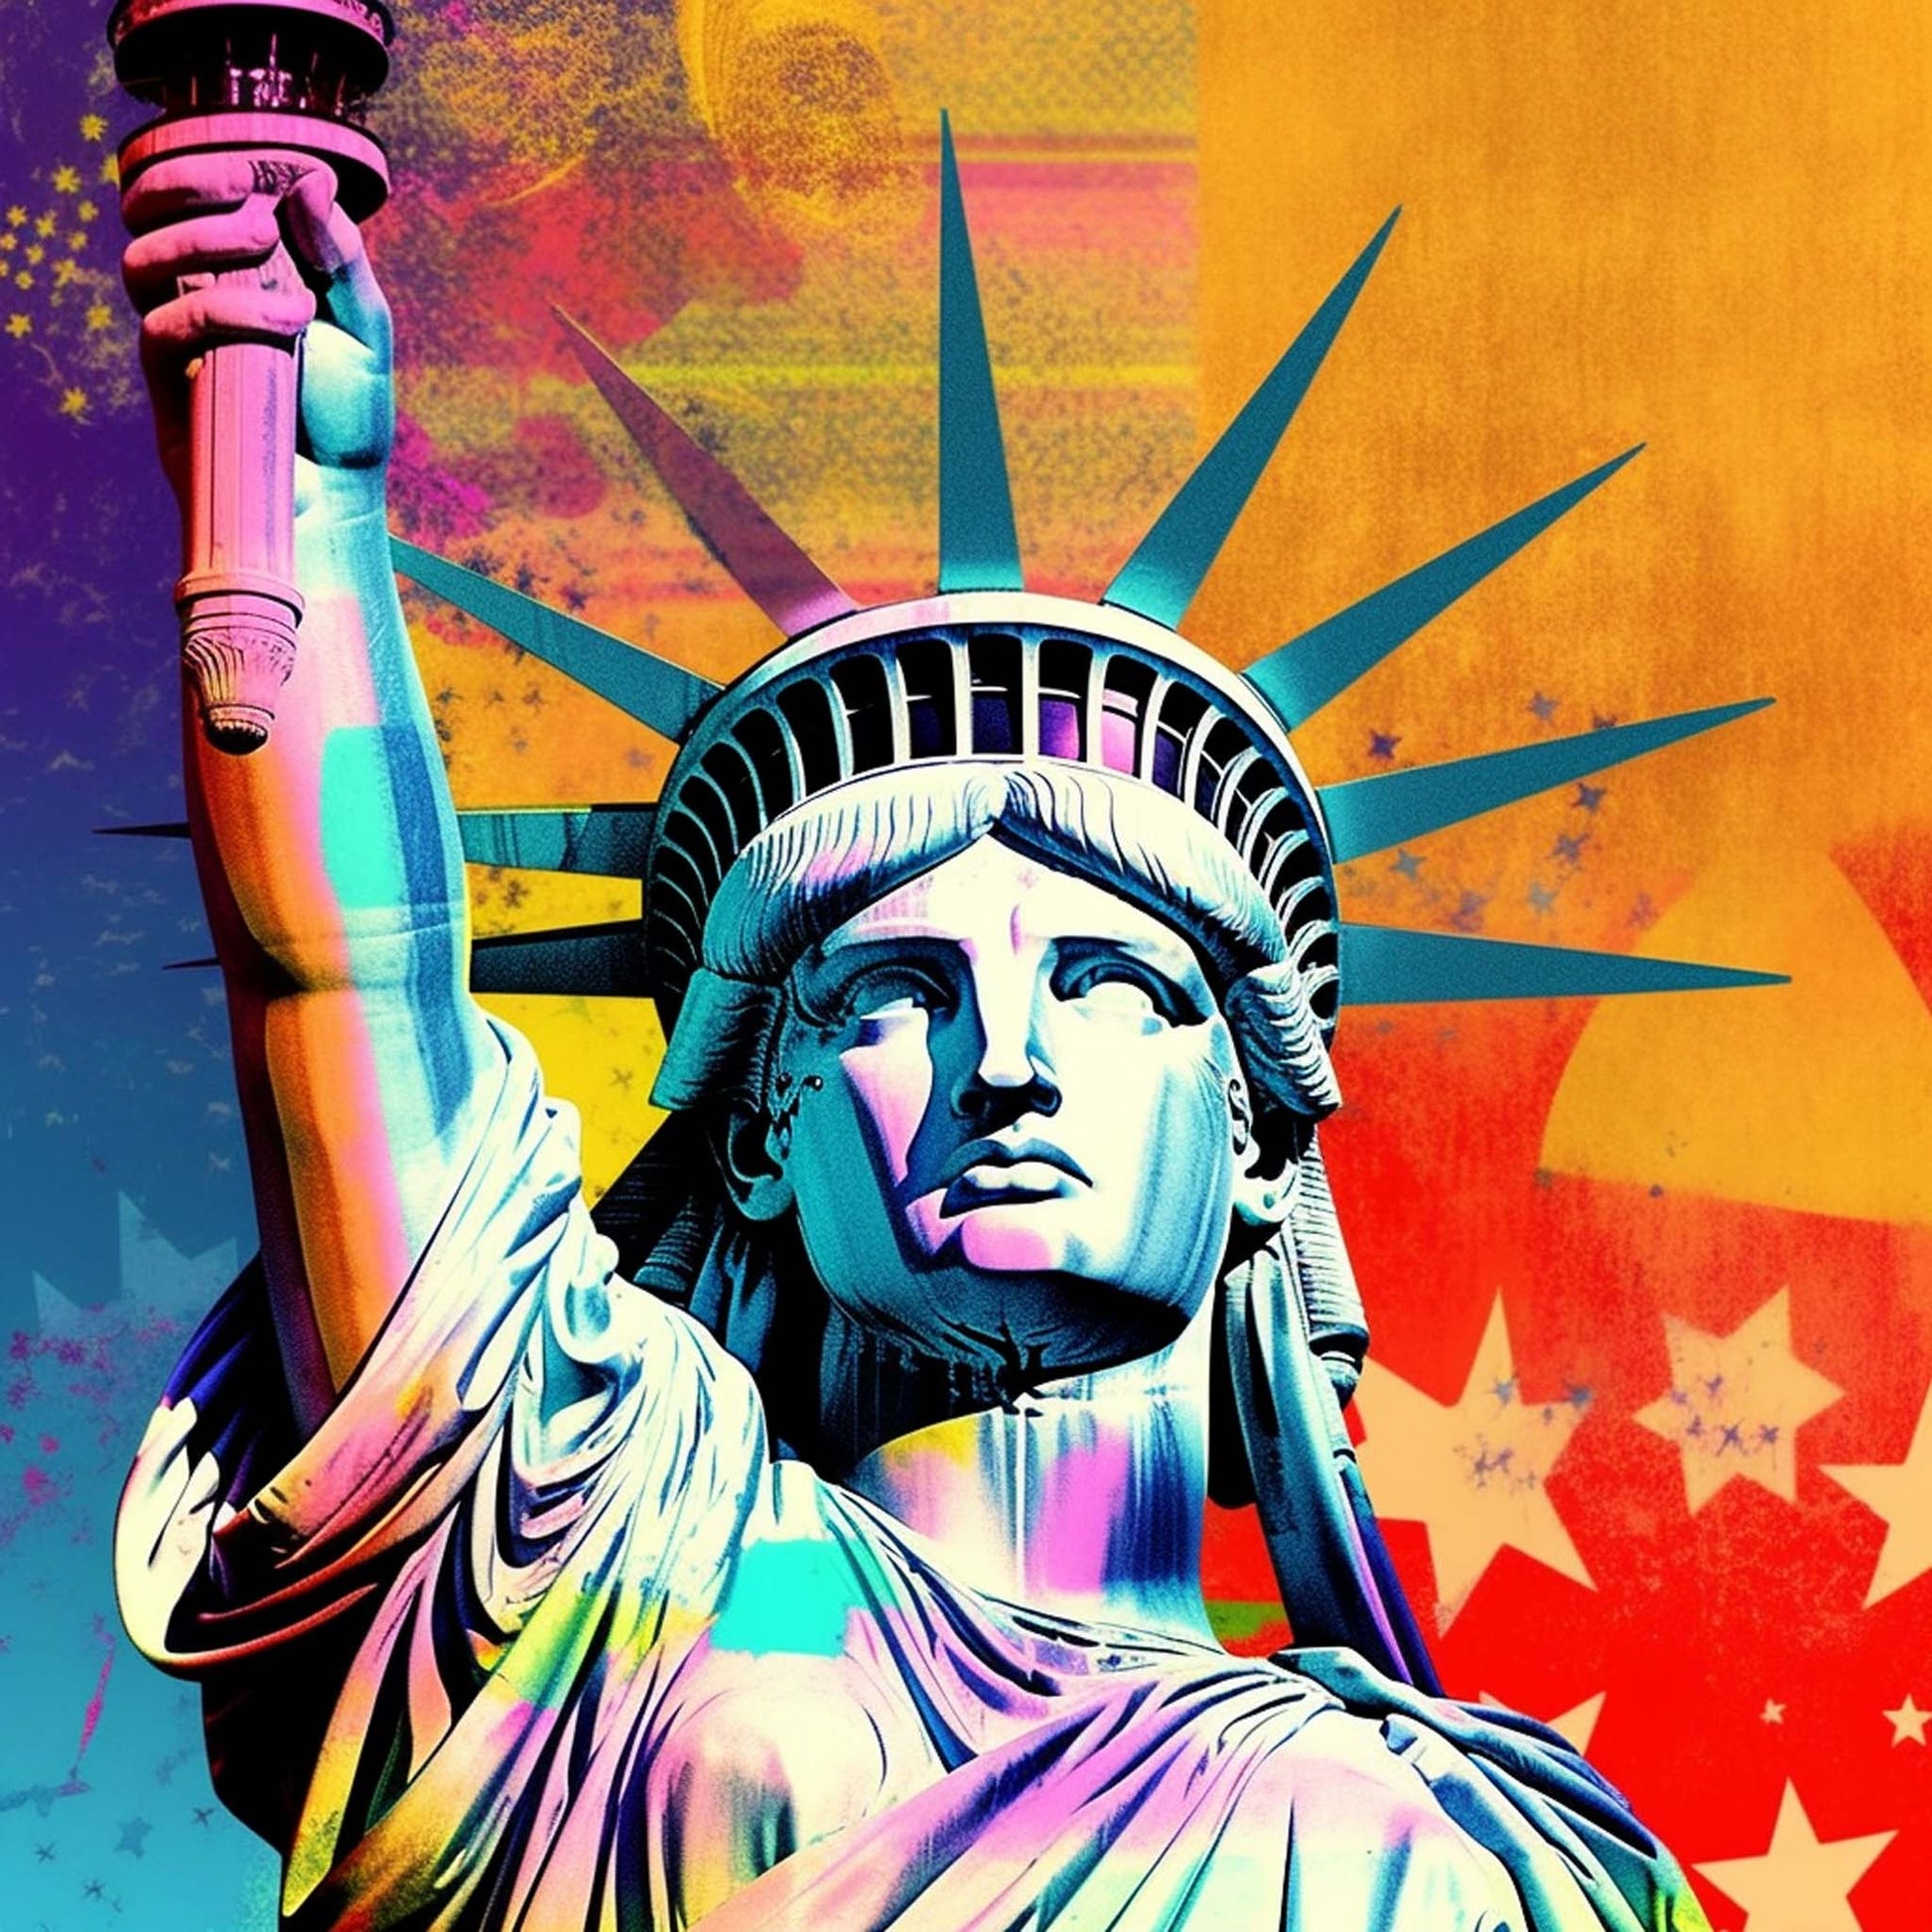 Urbanisto - New York Freiheitsstatue - Wandbild in der Stilrichtung der Pop-Art